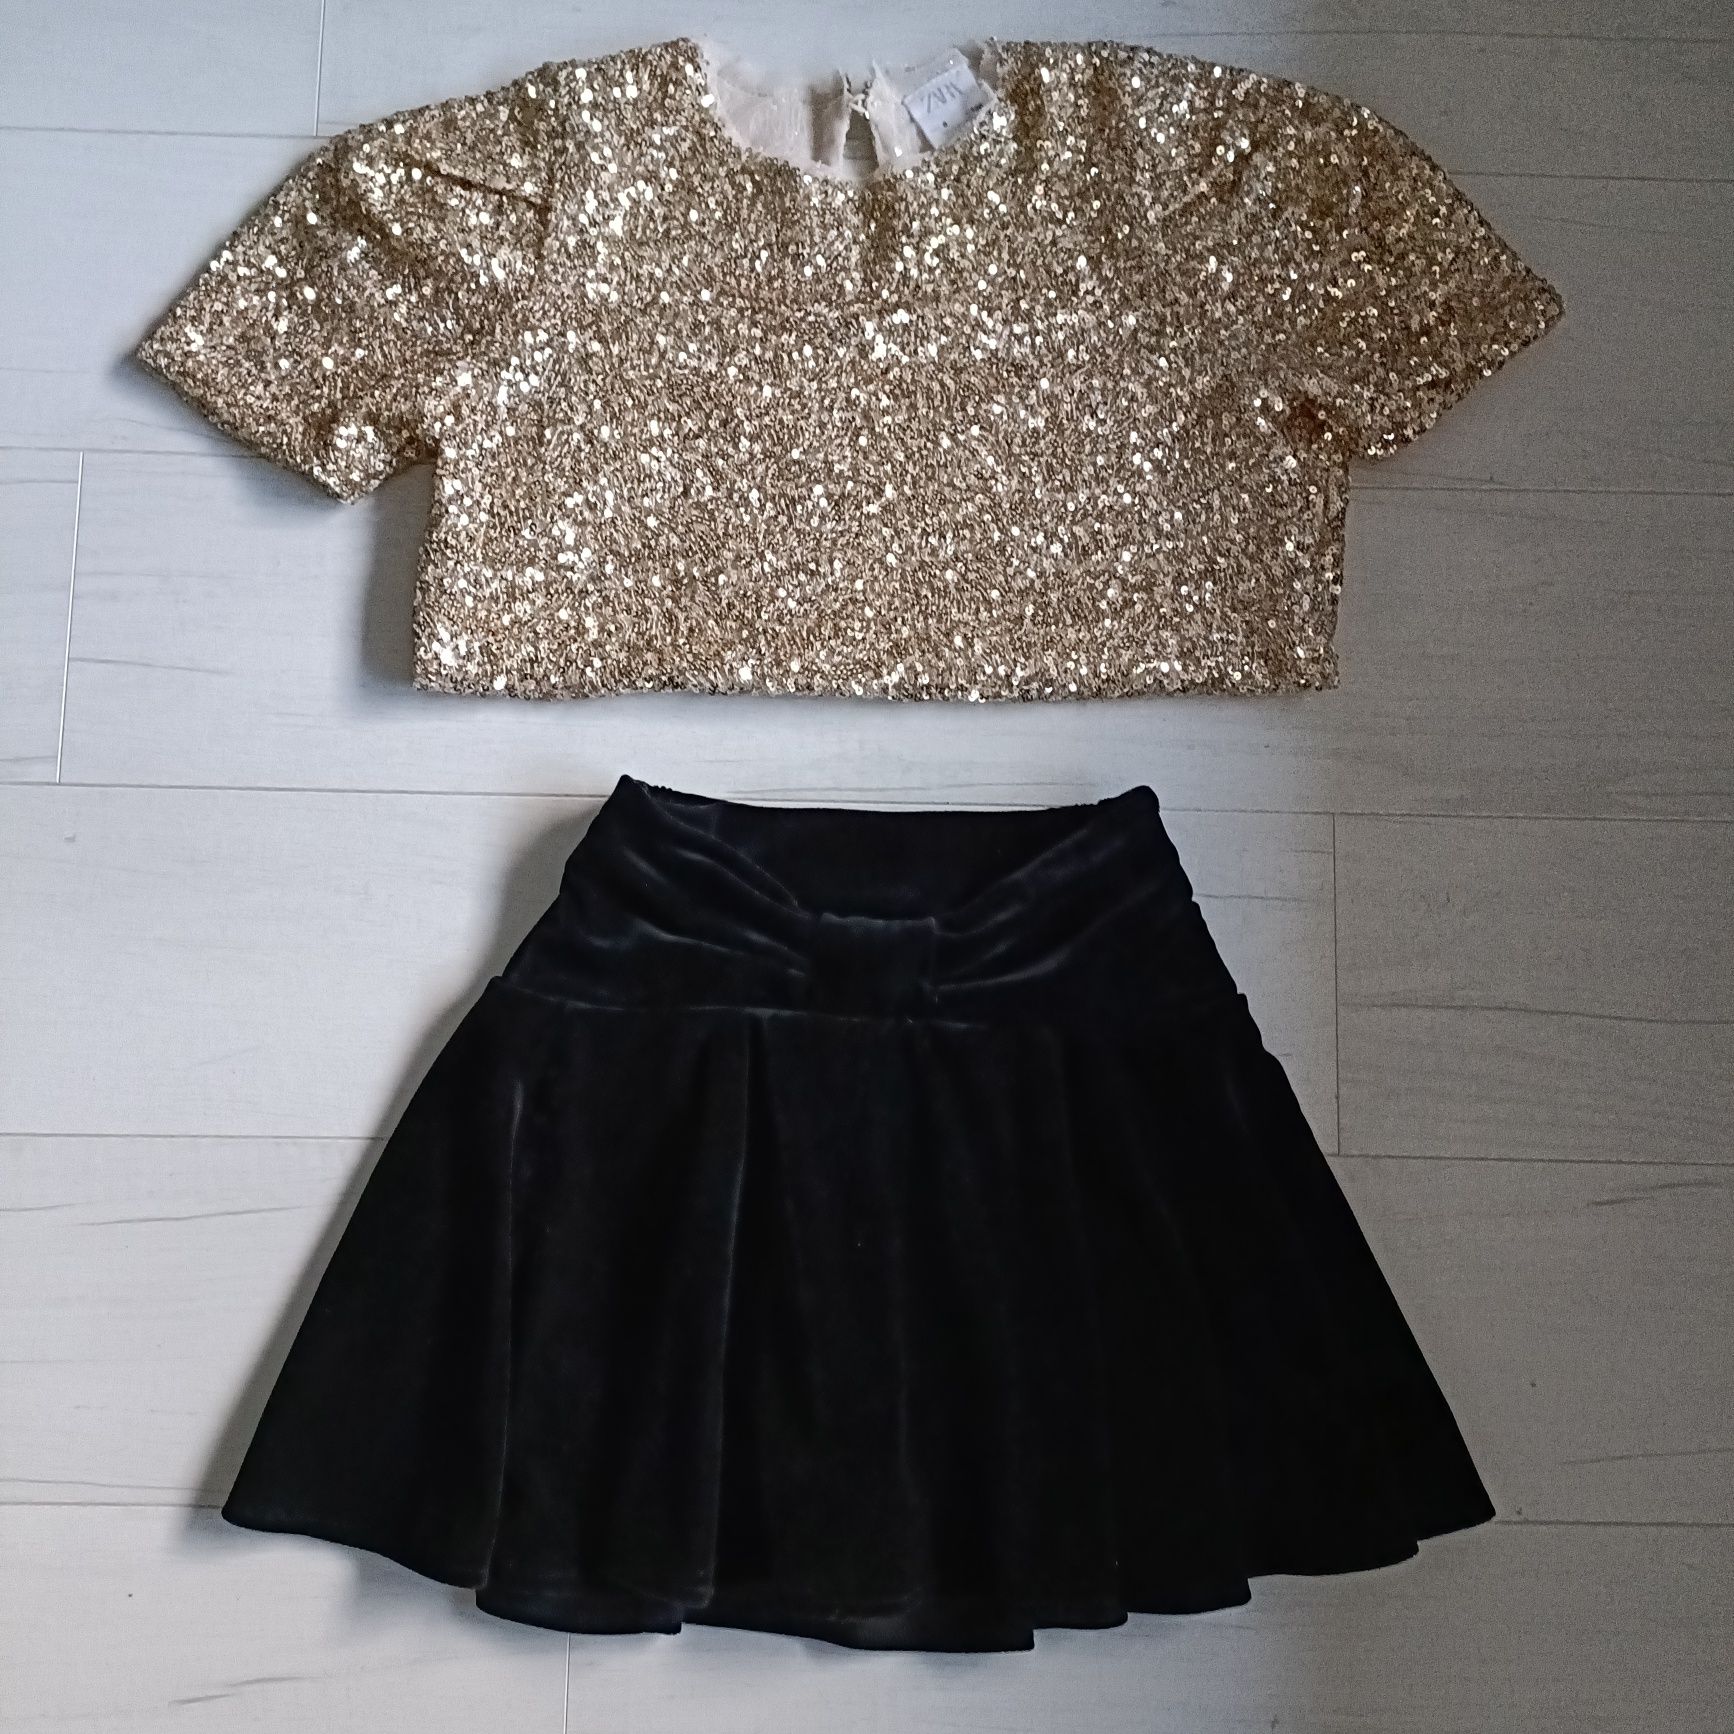 Komplet Zara, 128, spódnica i bluzka